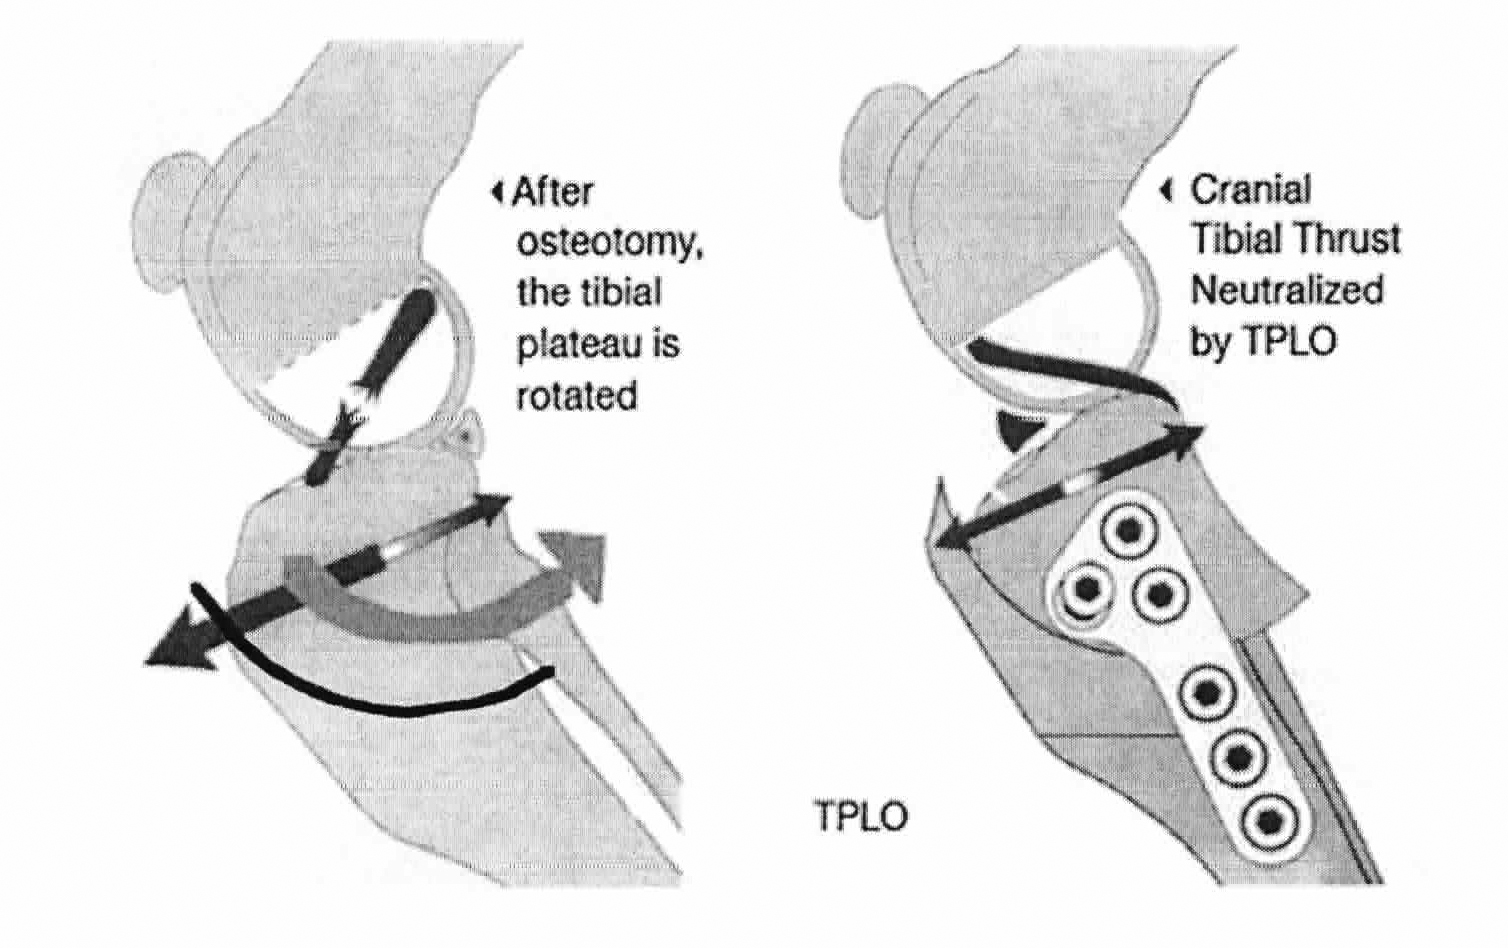 Tibial Plateau Leveling Osteotomy